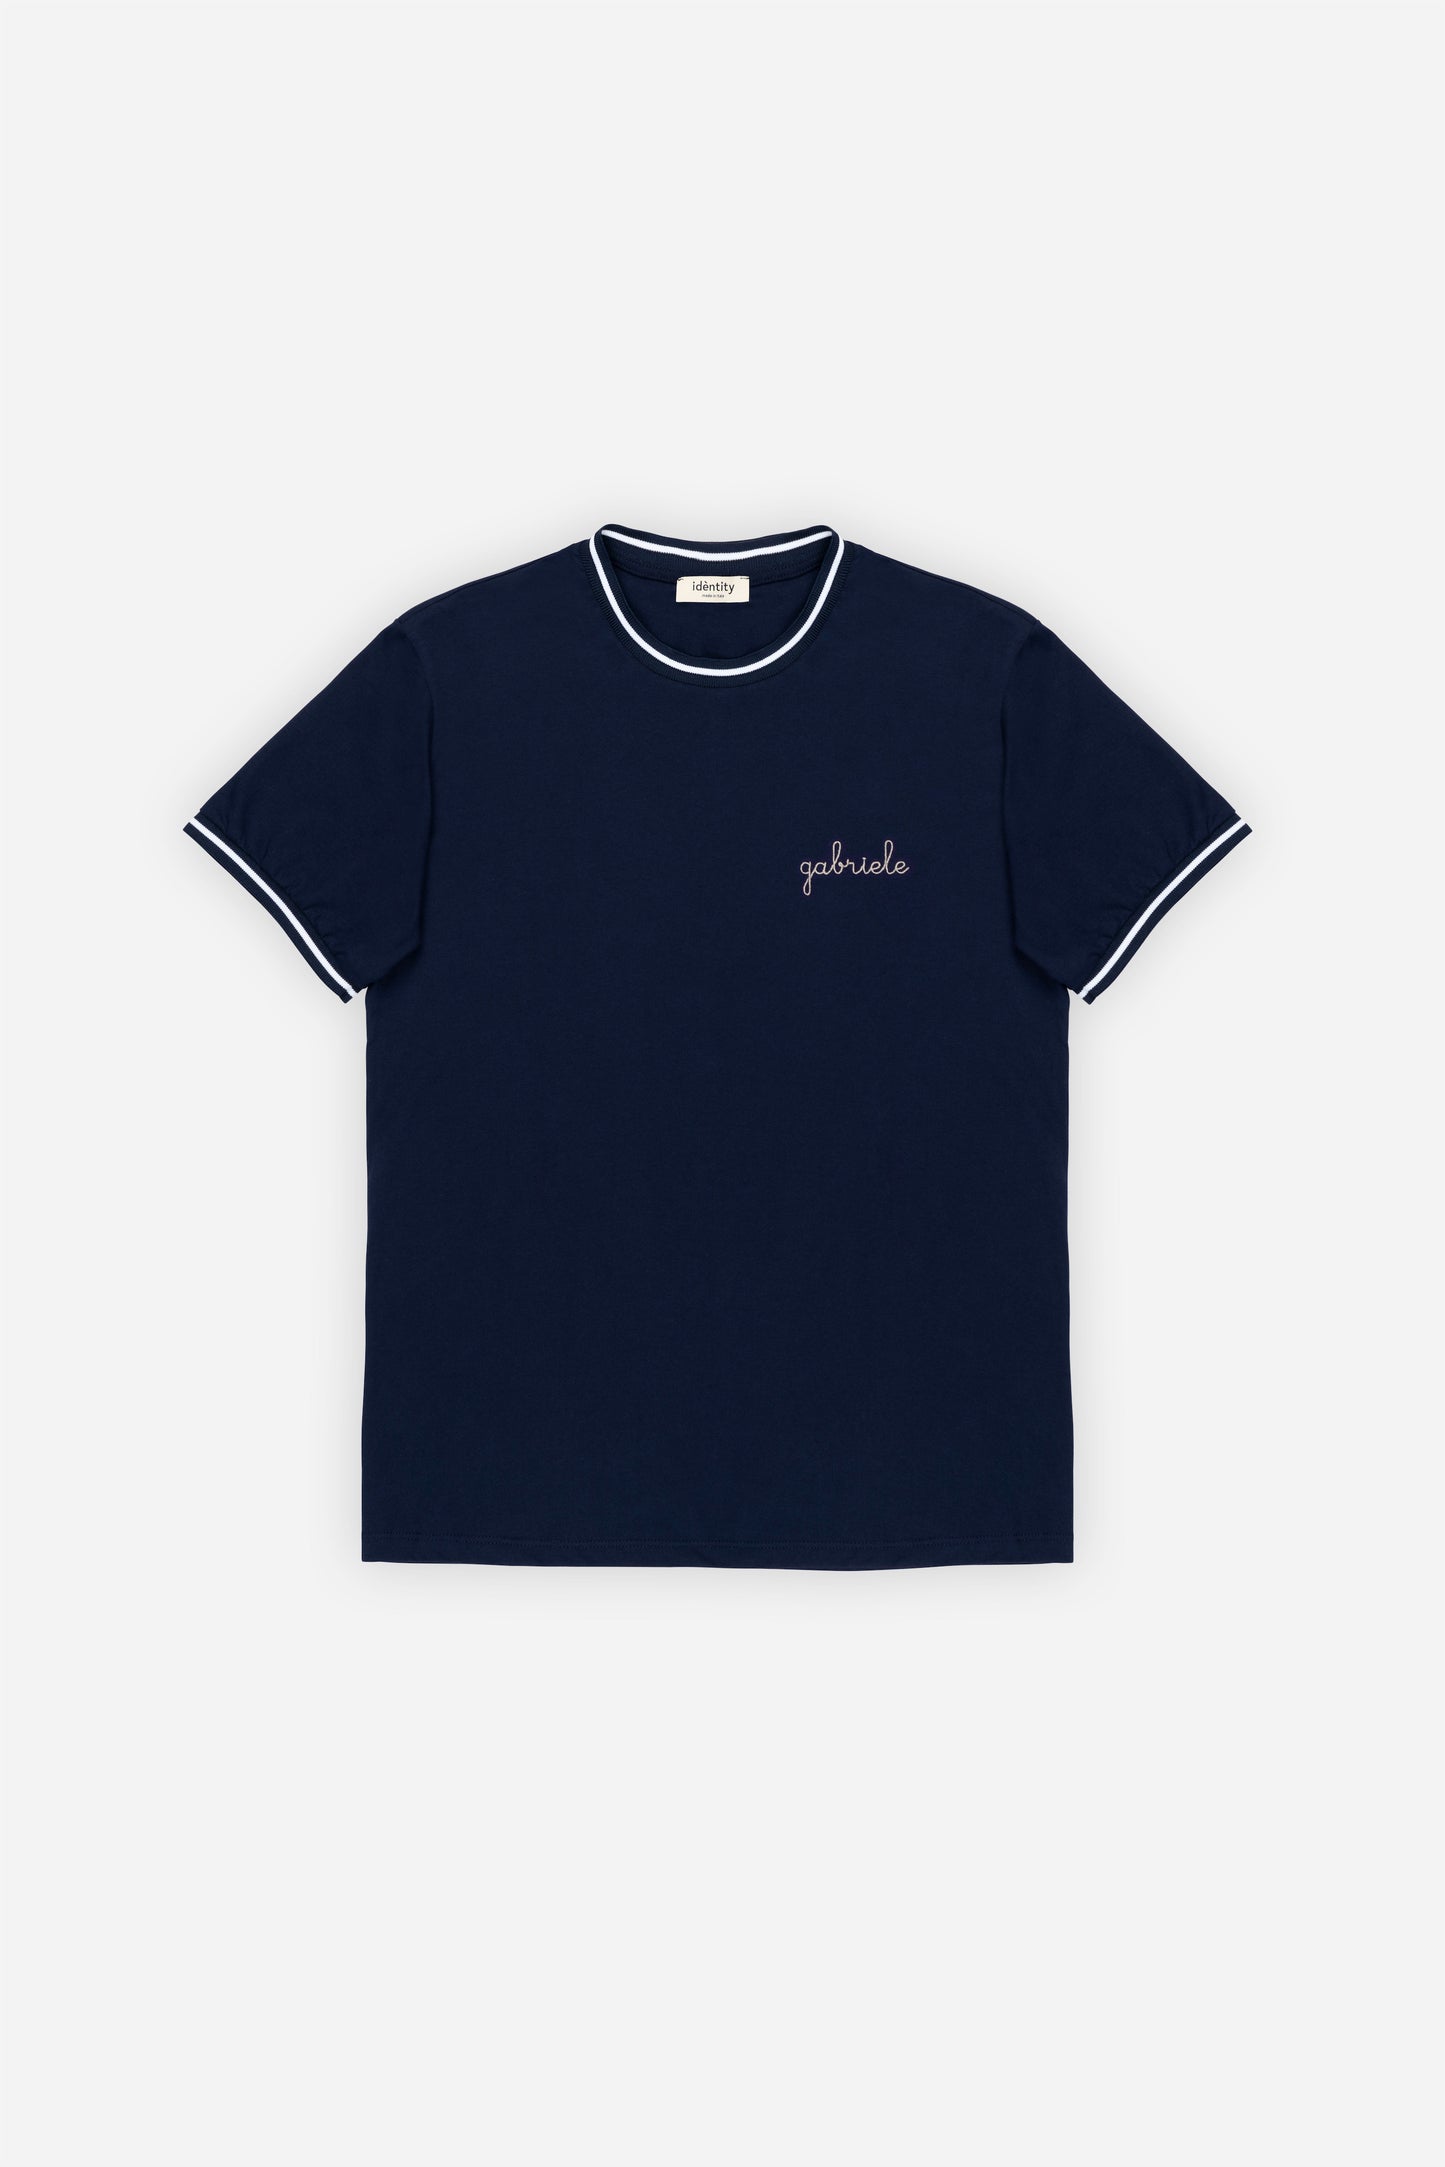 Harvard T-Shirt - Prussia Blue